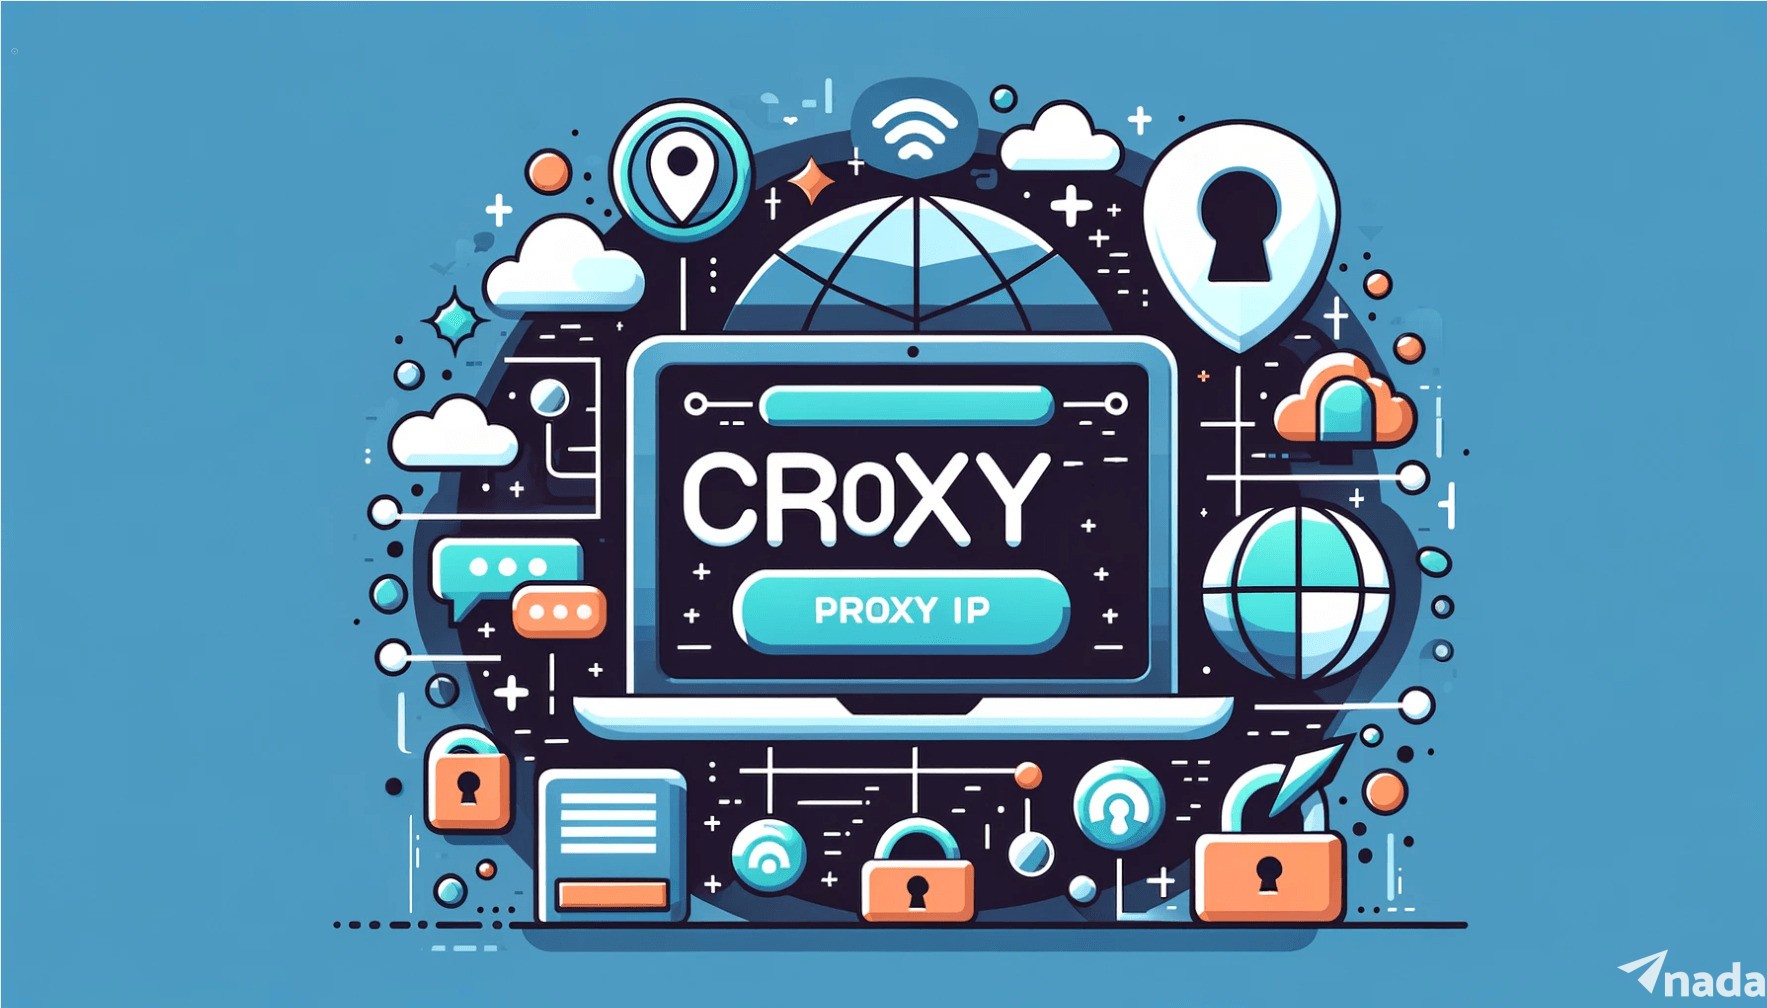 Croxy Proxy IP